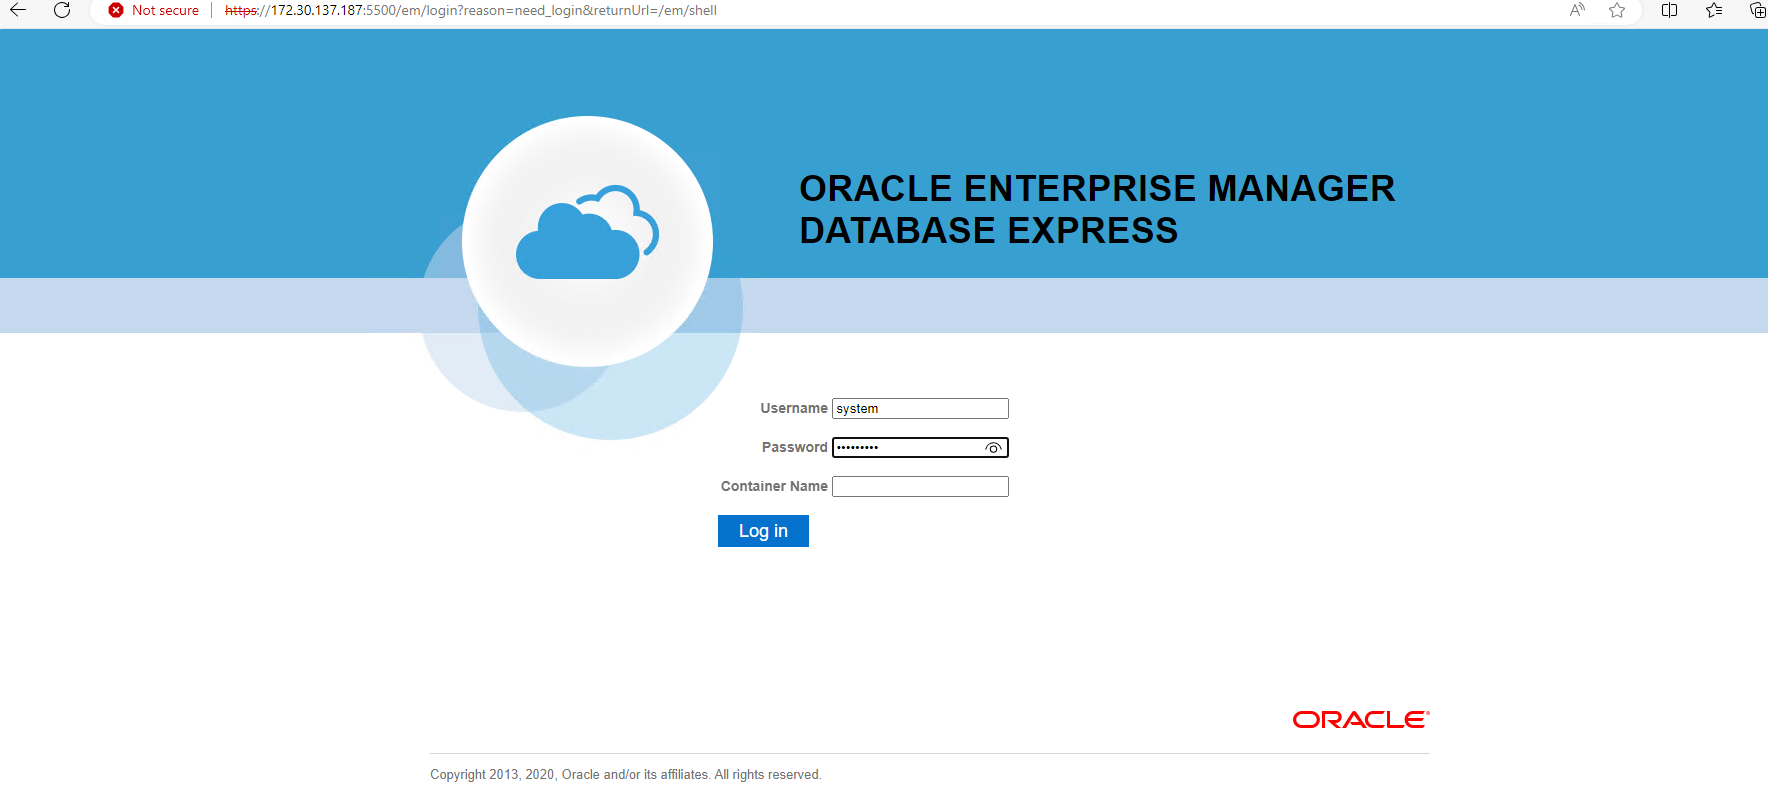 Dieses Bild zeigt den Anmeldebildschirm für Oracle Enterprise Manager Express an